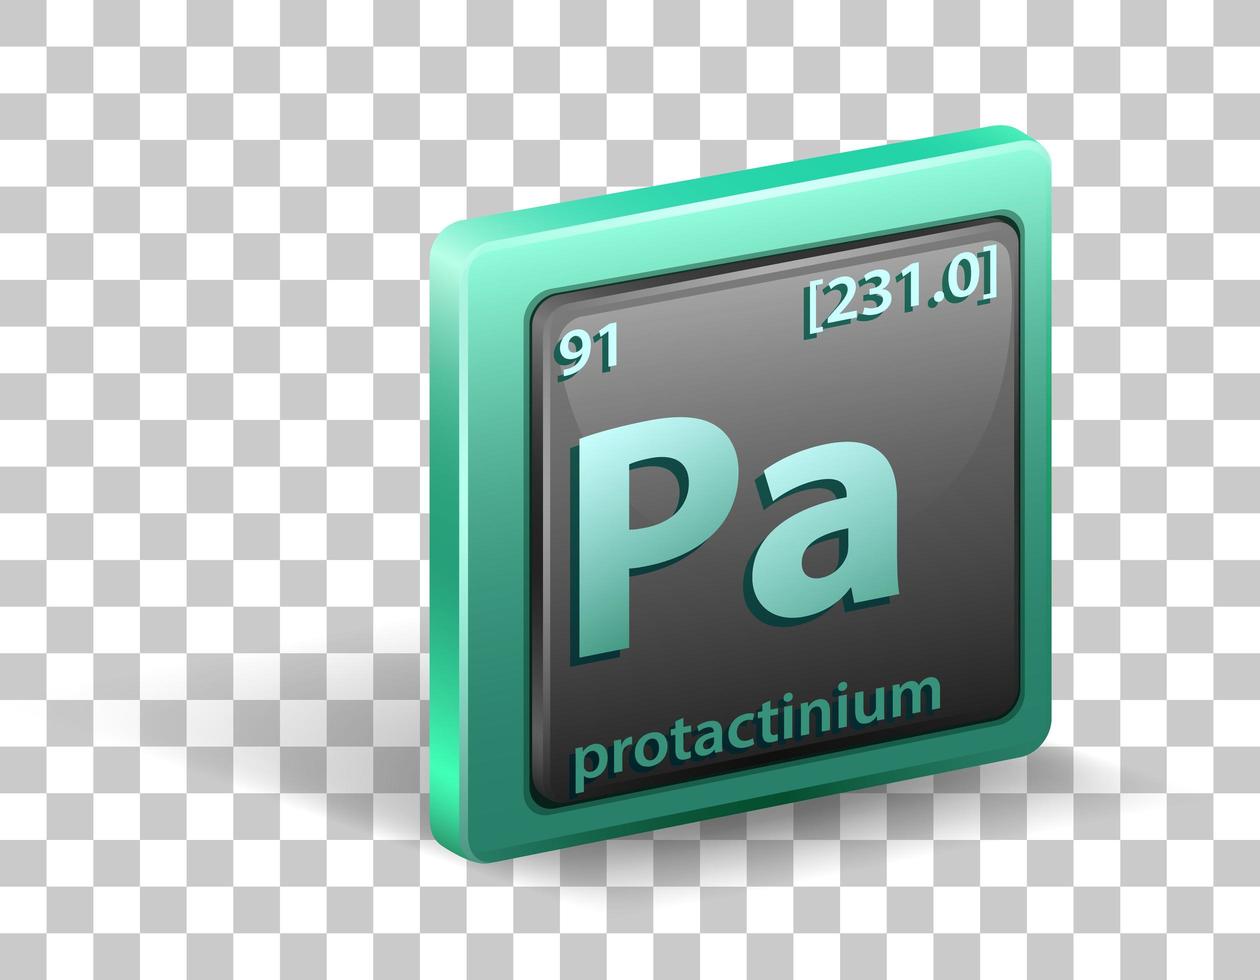 elemento químico protactínio. símbolo químico com número atômico e massa atômica. vetor